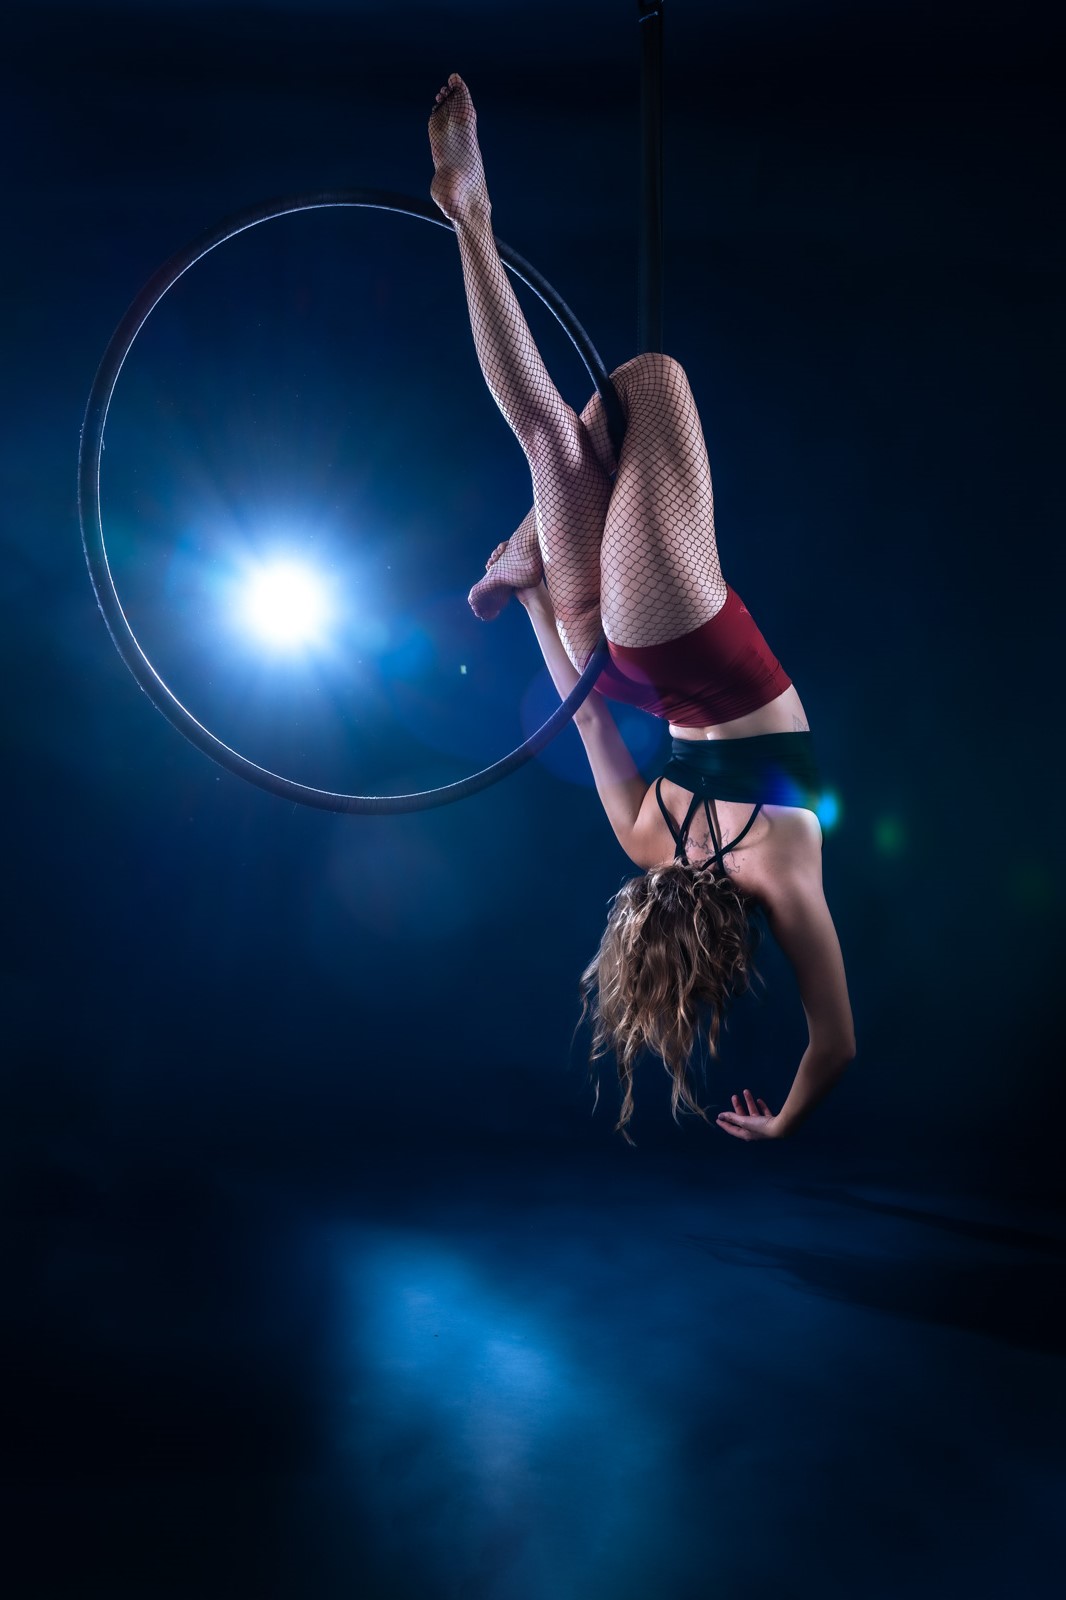 Akrobatik-Fotoshooting im Studio: Frau hängt am überkopf am Aerial Hoop vor dunkelblauem Hintergrund und wird vom Blitzlicht beleuchtet.